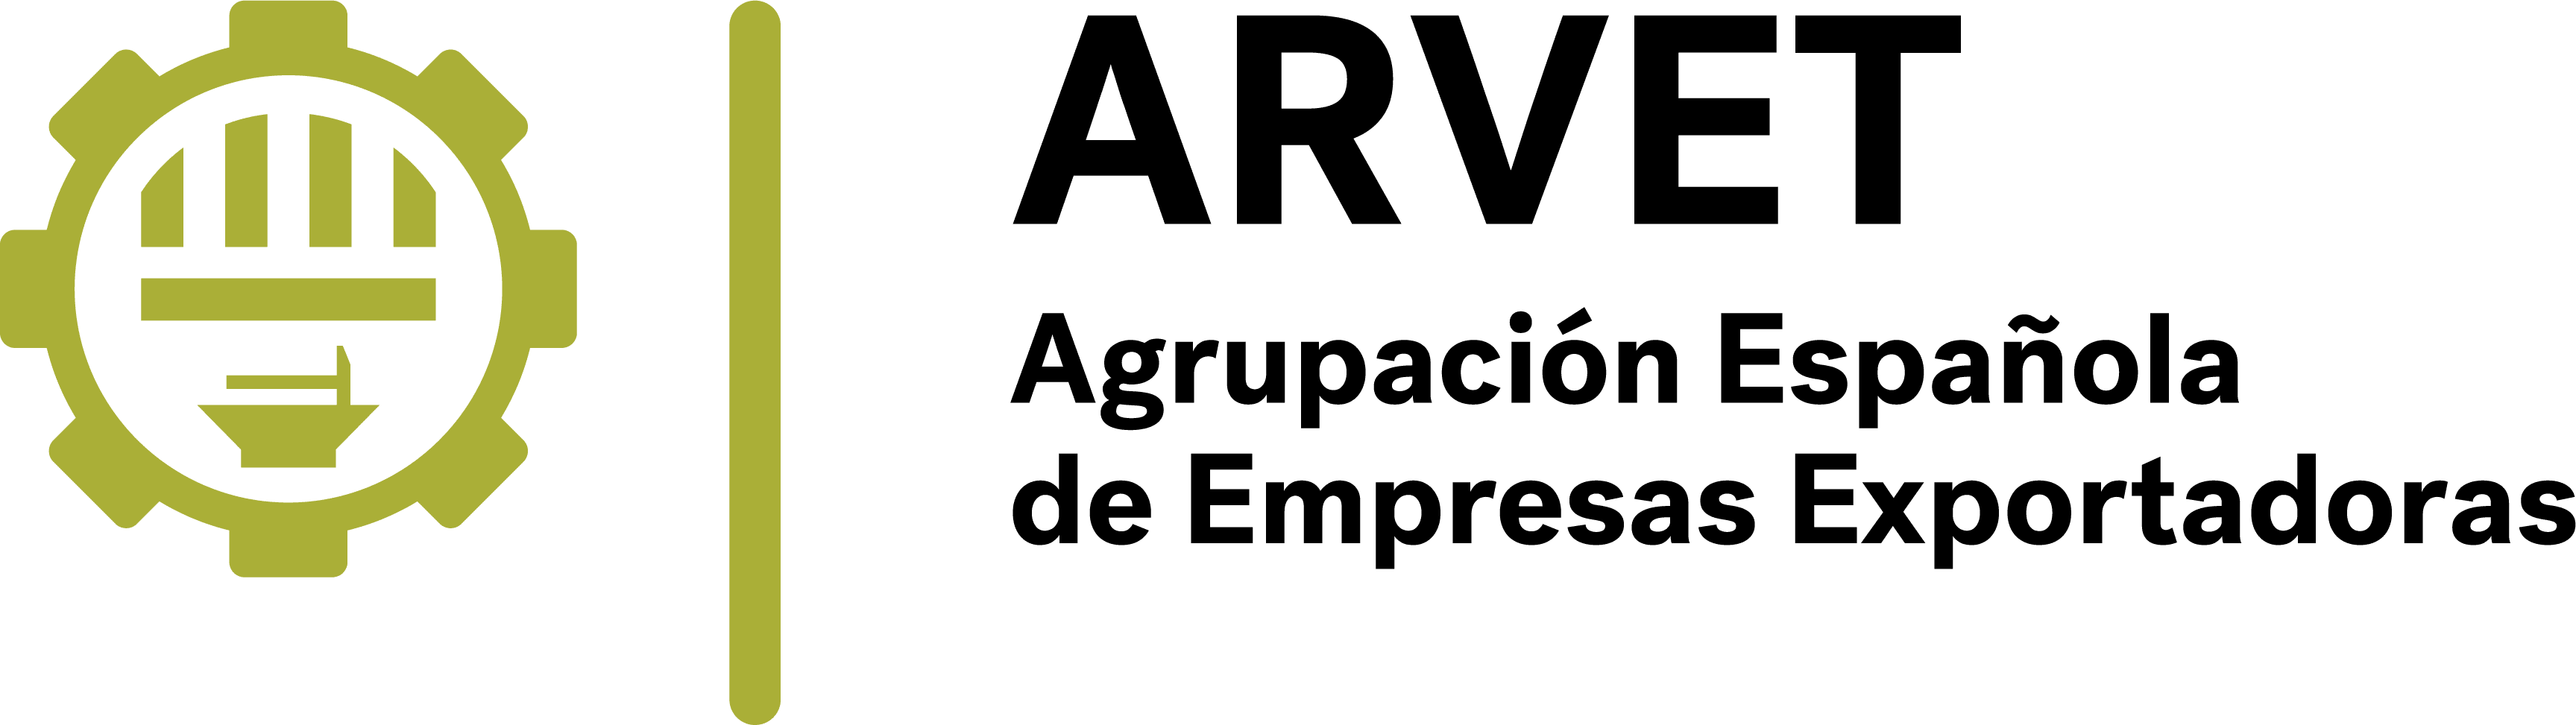 Arvet logo